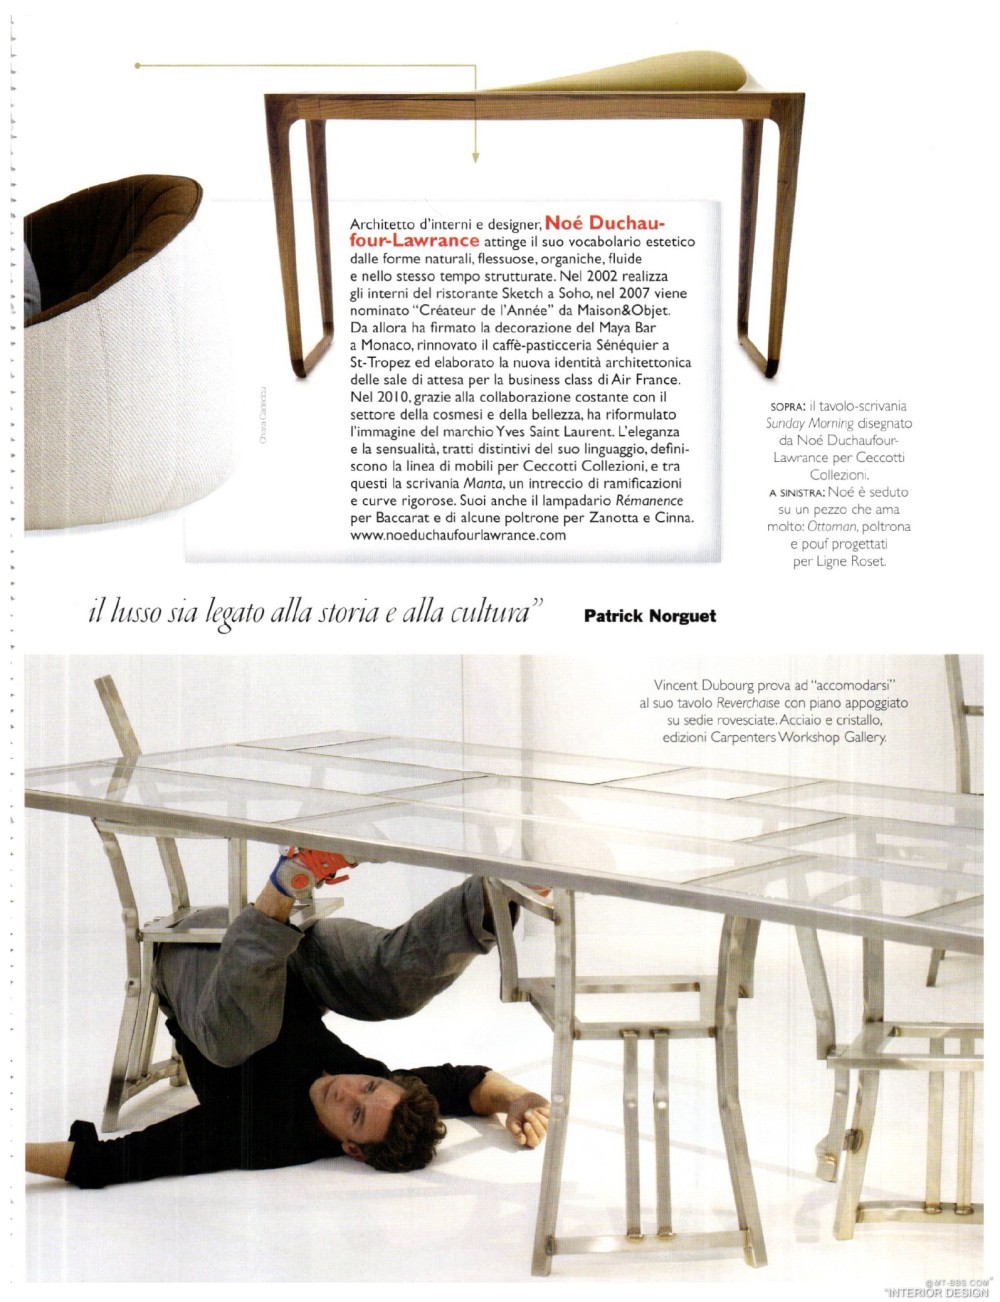 意大利AD 杂志 2012年全年JPG高清版本 全免（上传完毕）_0033.jpg